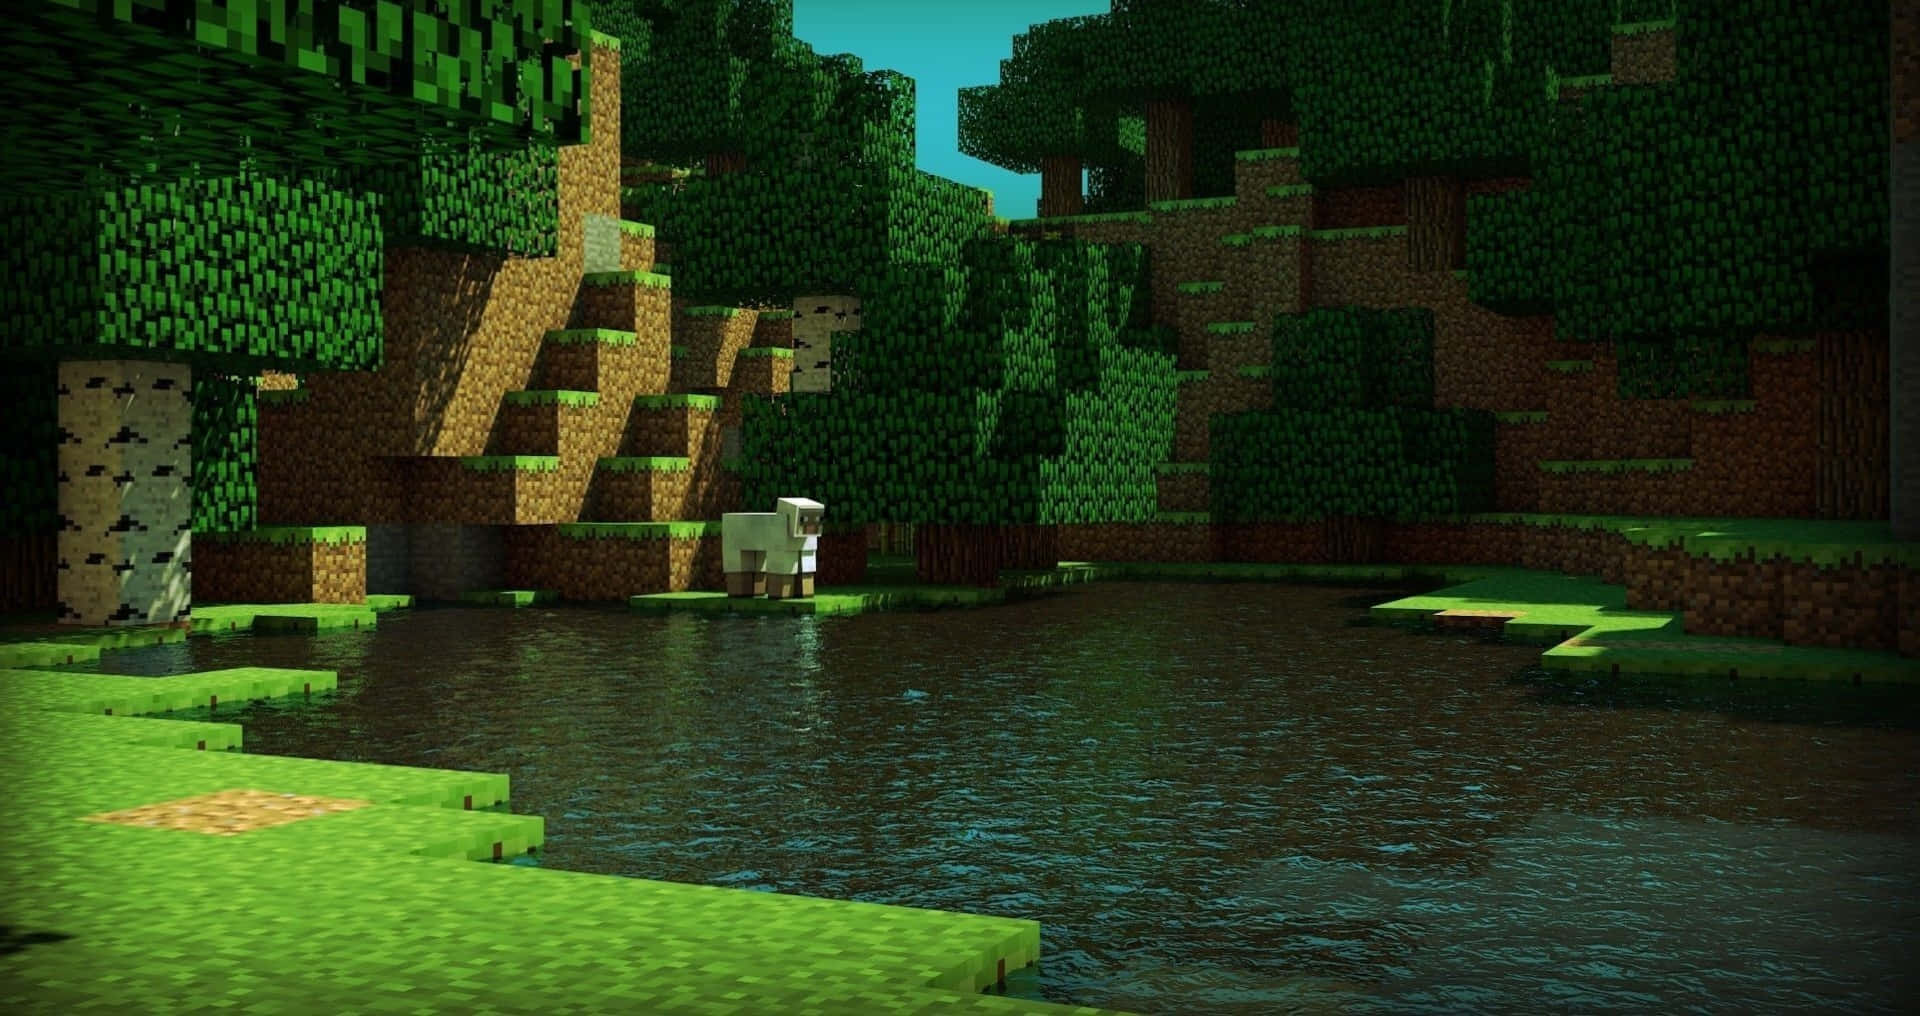 Imagendel Lago De Minecraft En El Bosque